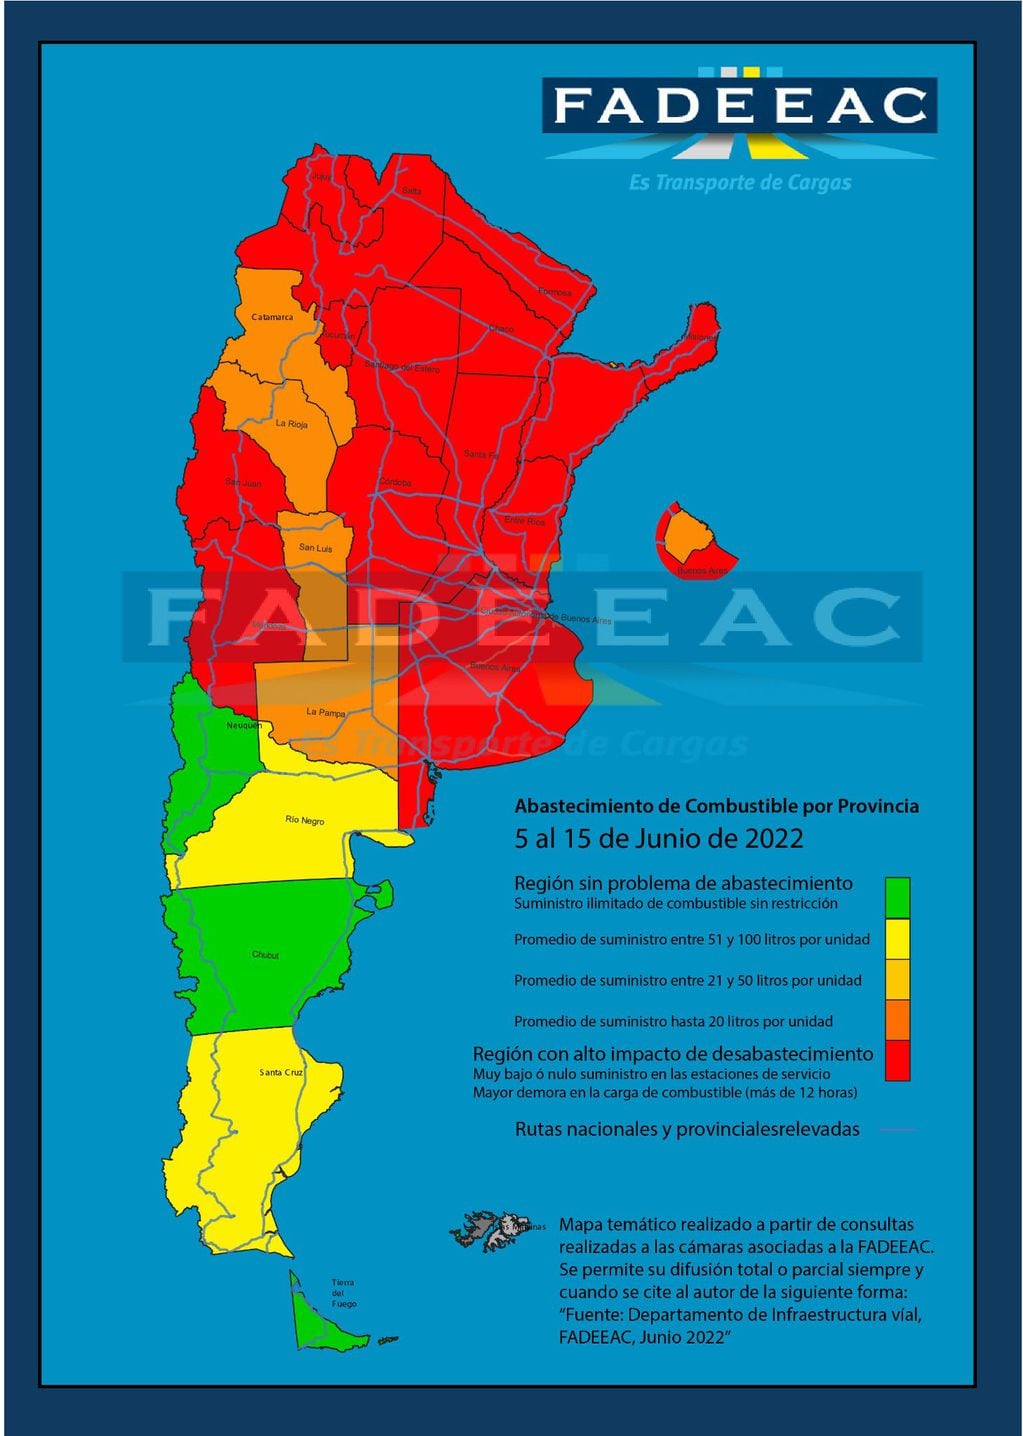 Falta de gasoil en Argentina: mapa sobre la situación de cada provincia hasta el 15 de junio.